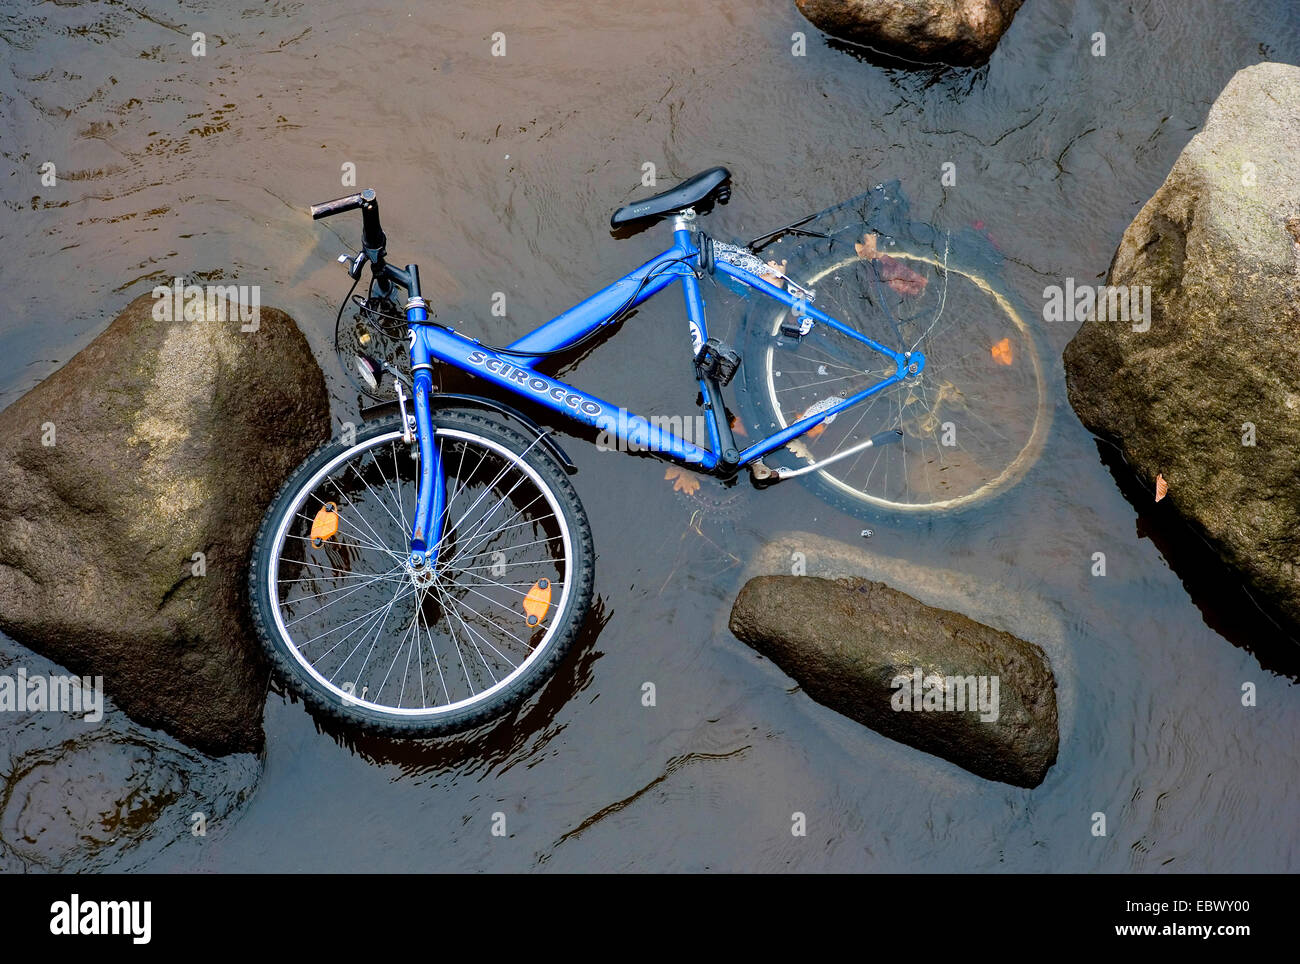 Nouveau bike bleu couché dans une eau peu profonde parmi les roches, Allemagne Banque D'Images